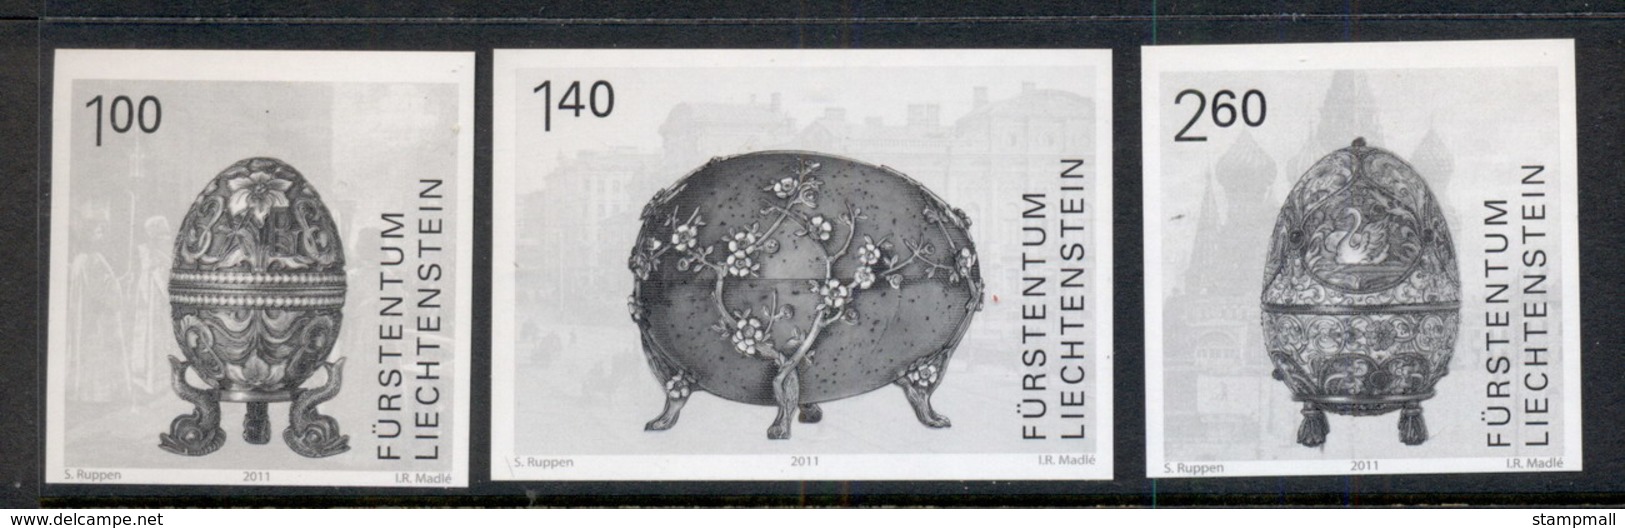 Liechtenstein 2011 Easter Eggs, Black Print IMPERF MUH - Ungebraucht